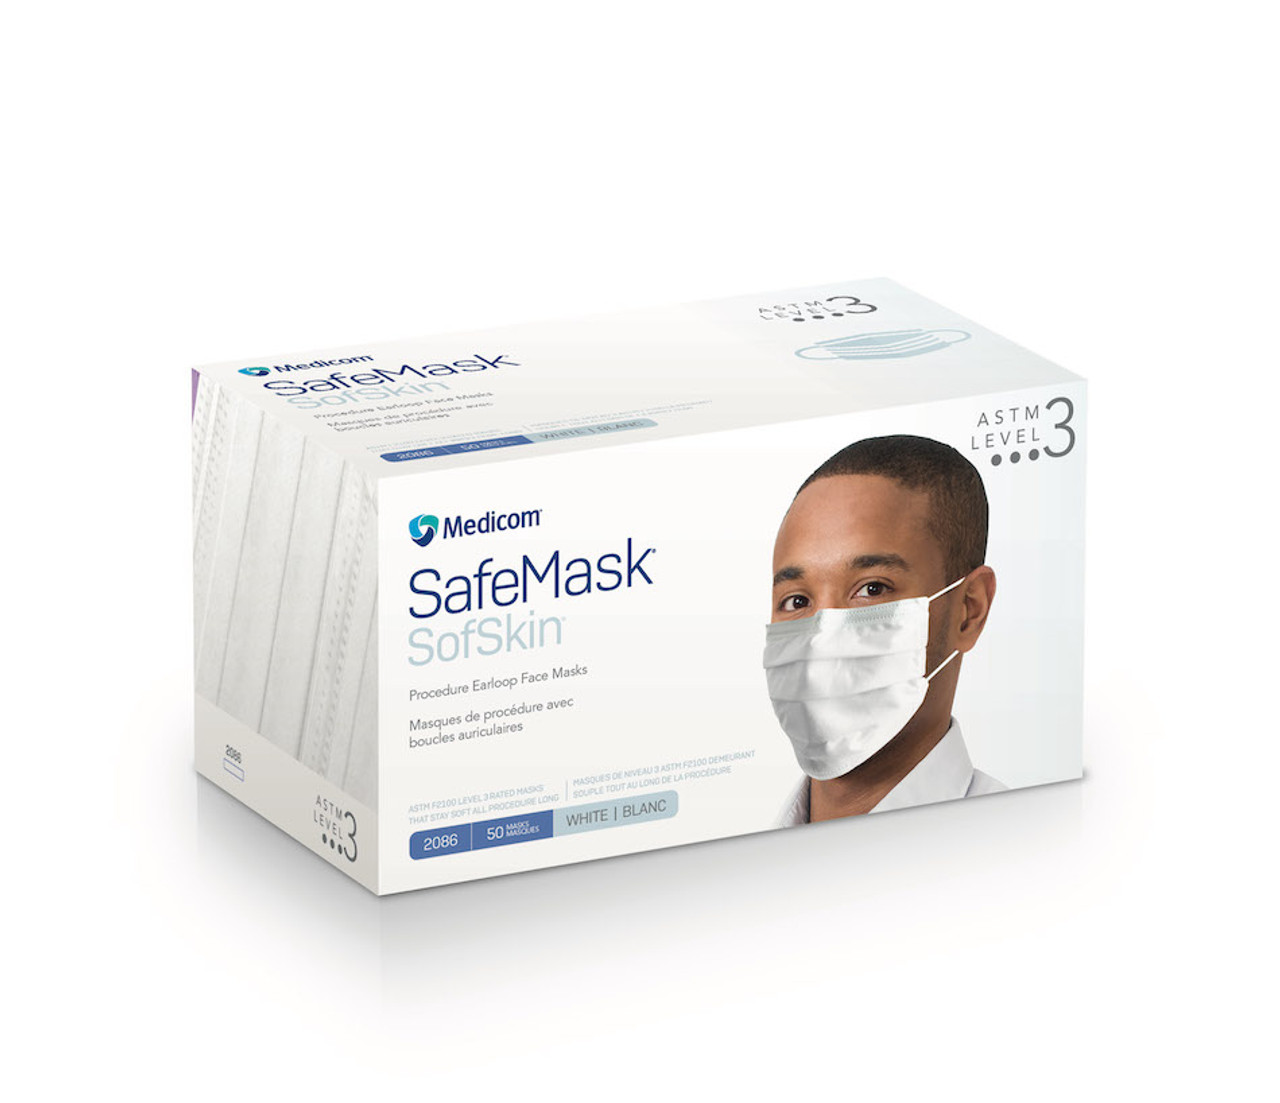 Medicom SafeMask SofSkin Face Mask Level 1, White, 50/bx 2080